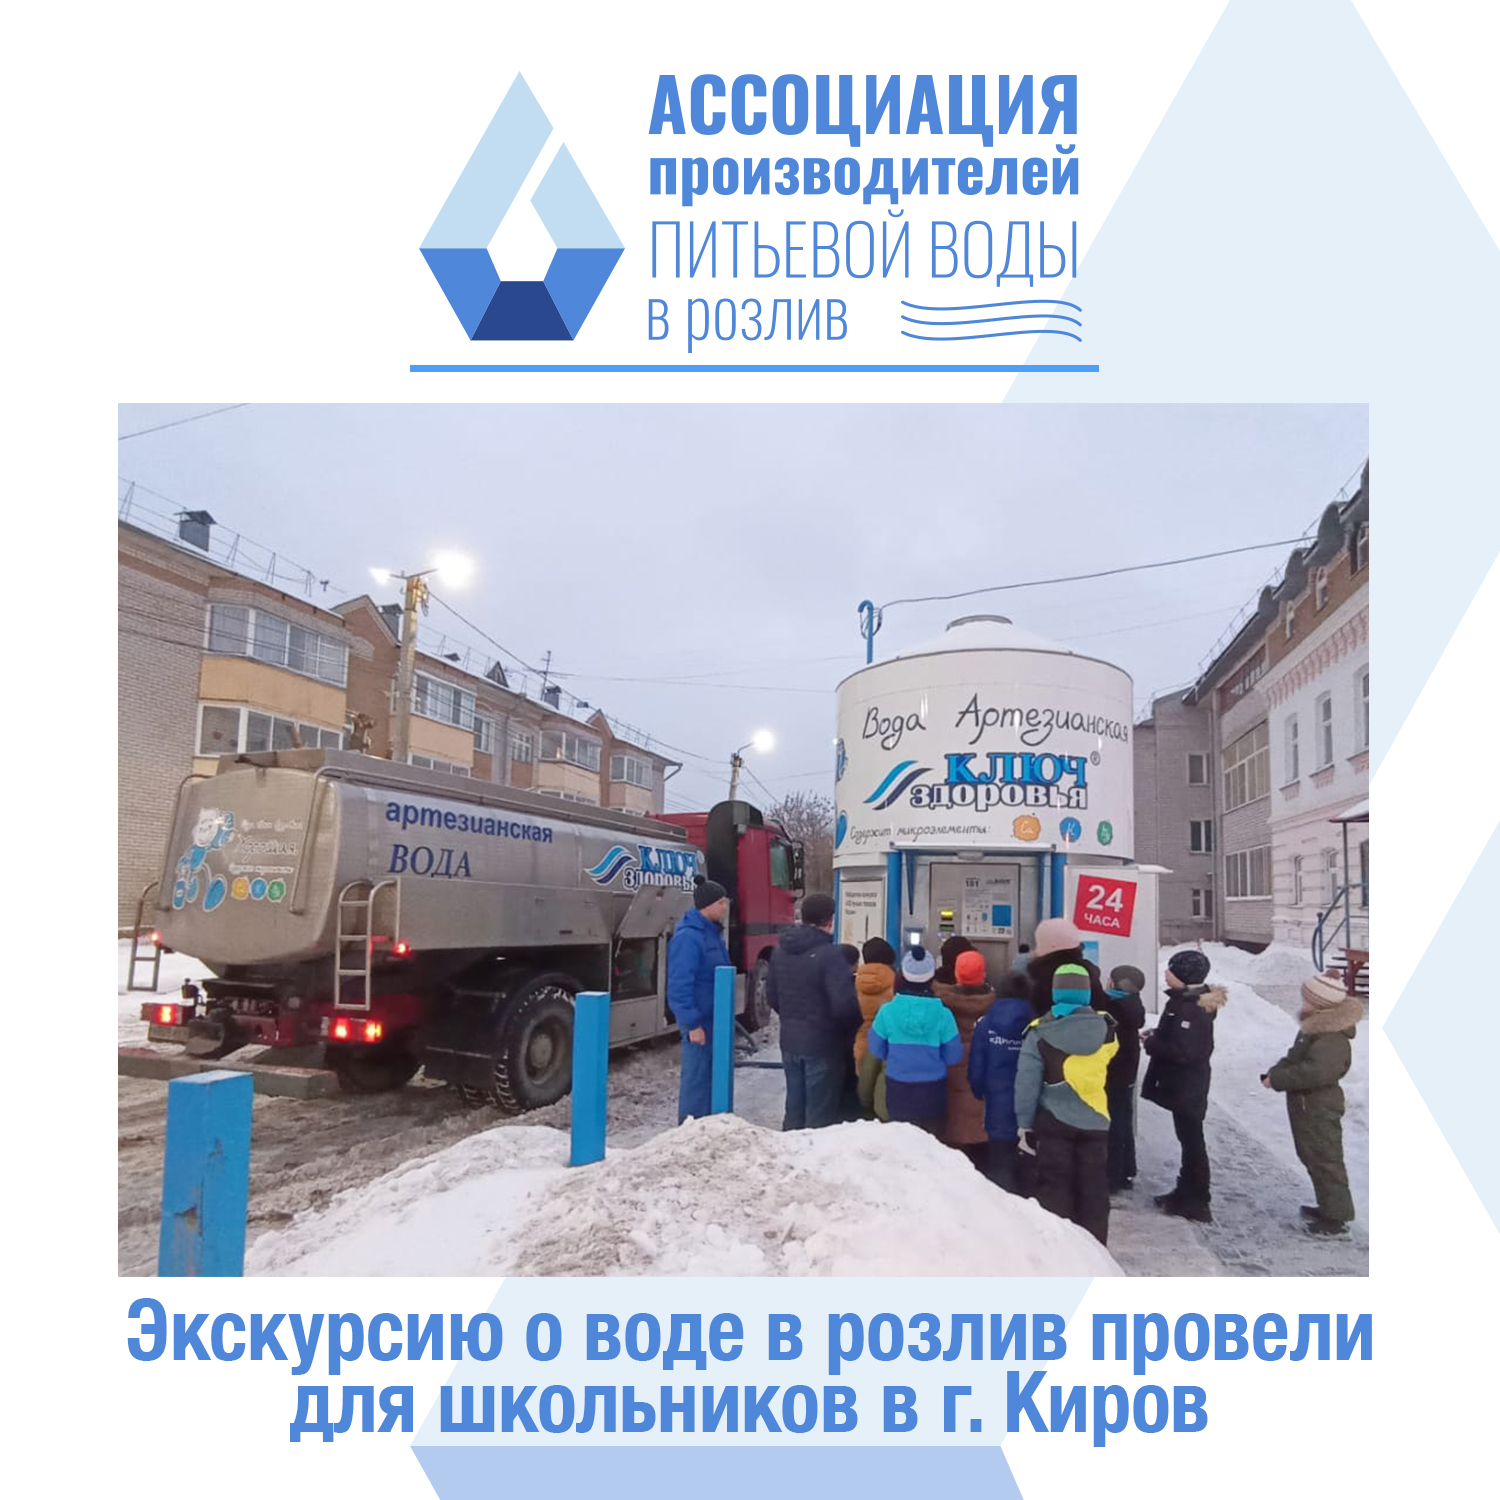 Экскурсию о воде в розлив провели для школьников в г. Киров